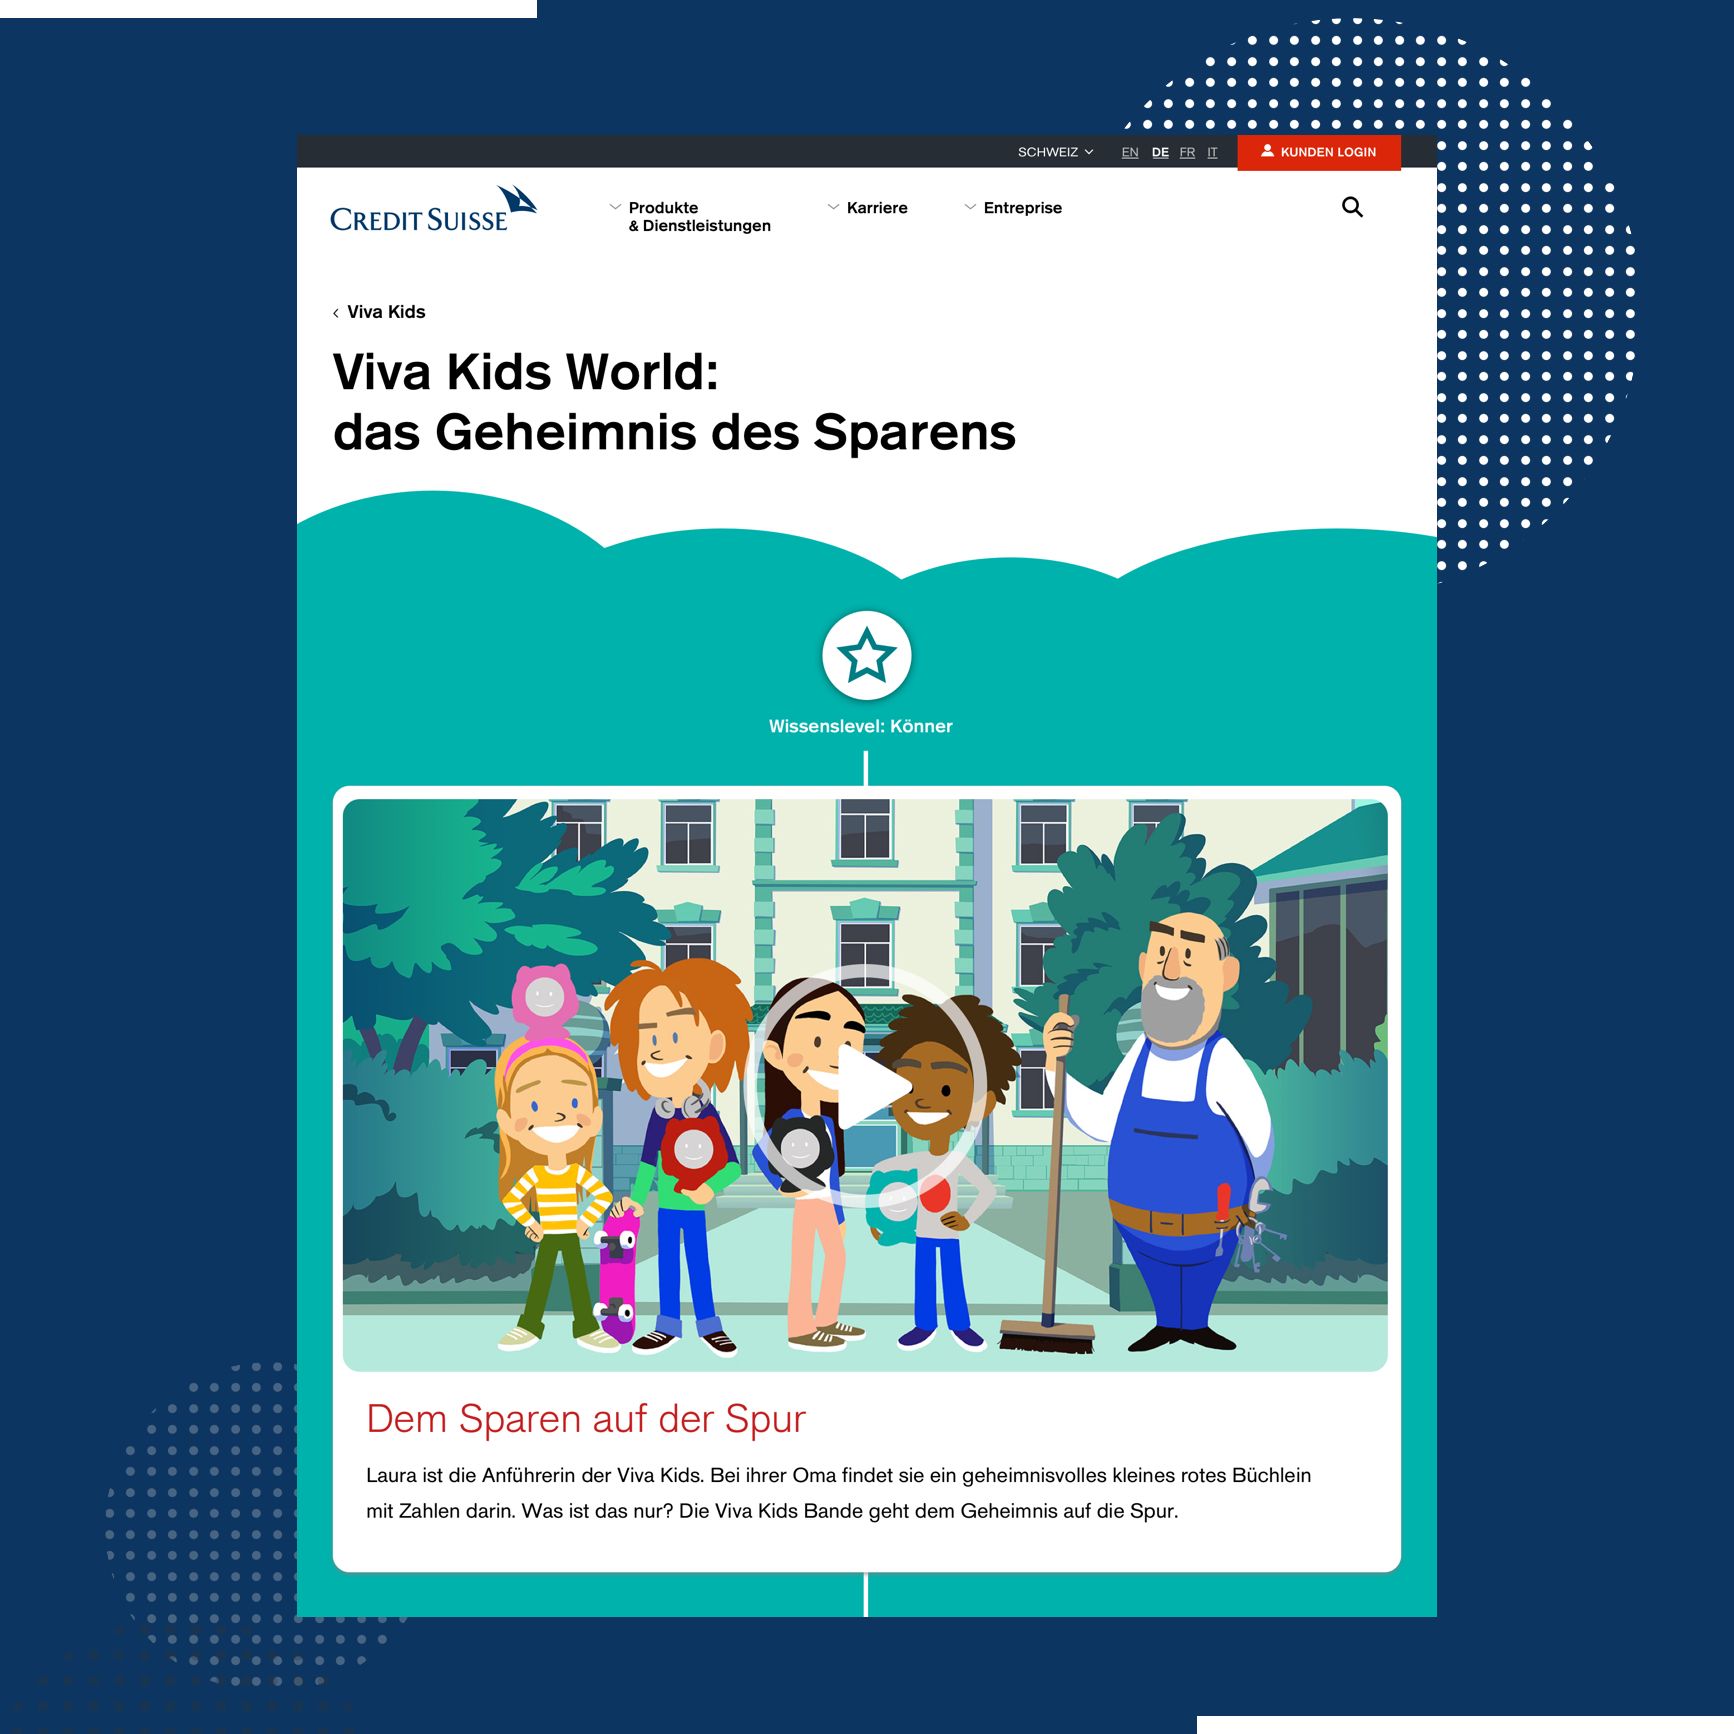 Credit Suisse - Viva Kids: Videobild Viva Kids World: das Geheimnis des Sparens